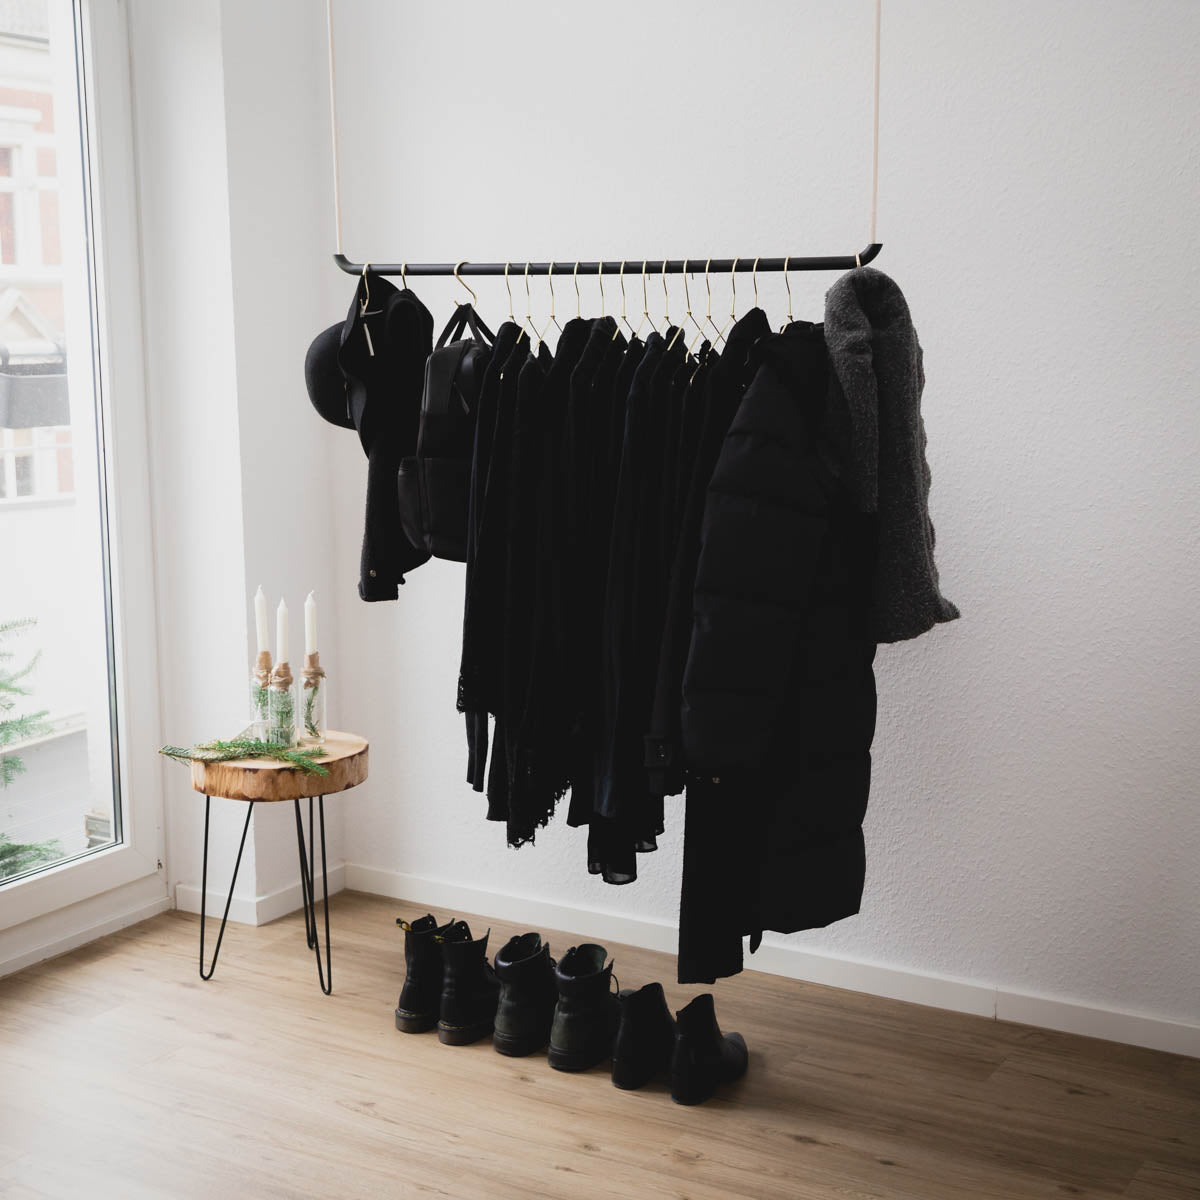 Kleiderstangen Deckenmontage an der platzsparend viele Kleider aufgehängt werden können